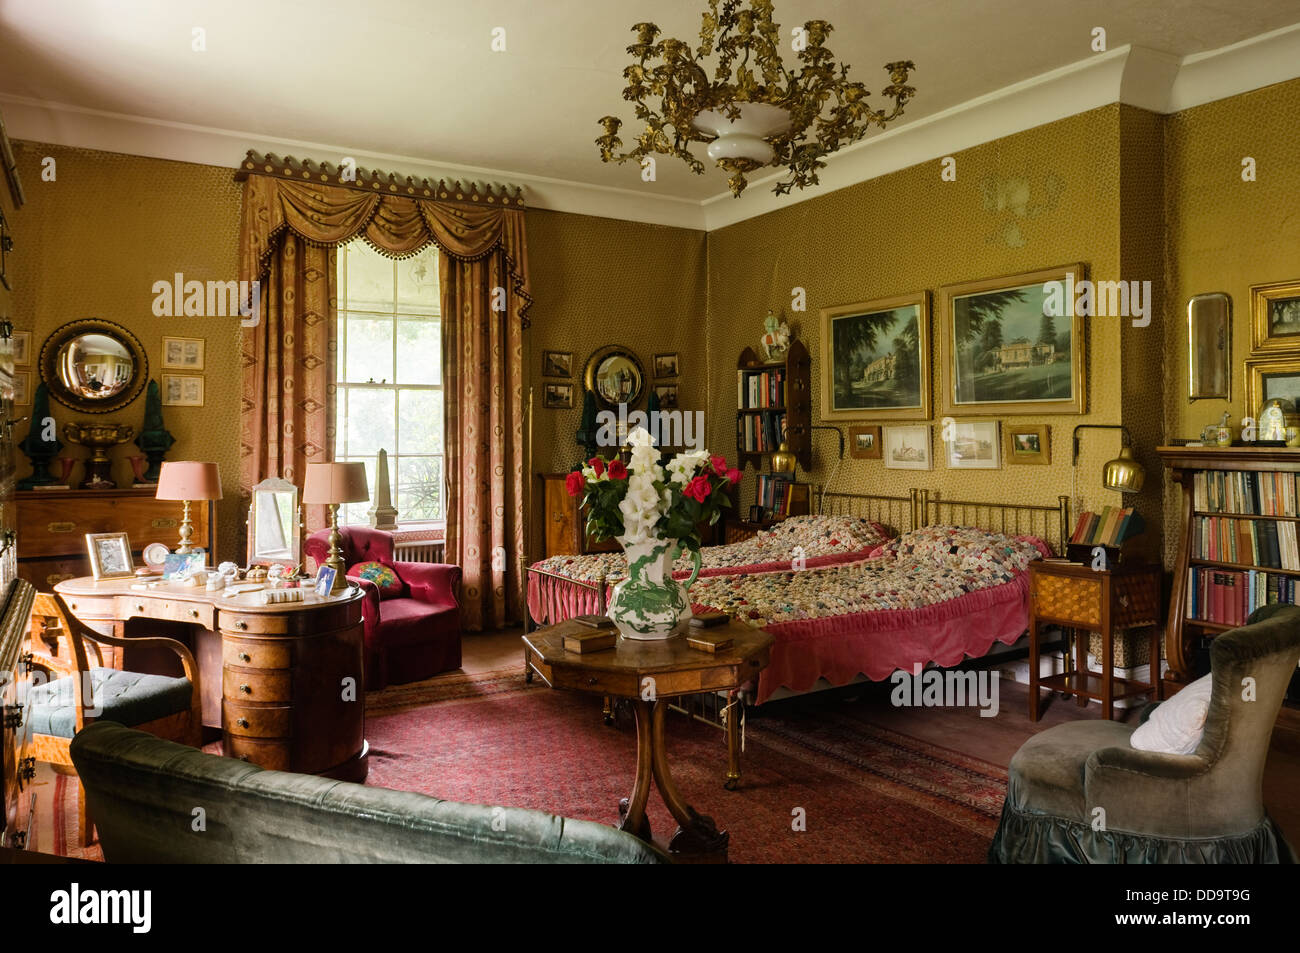 Chambre avec de l'or dans l'or design, meubles anciens en bois et des rideaux en toile de laine Banque D'Images